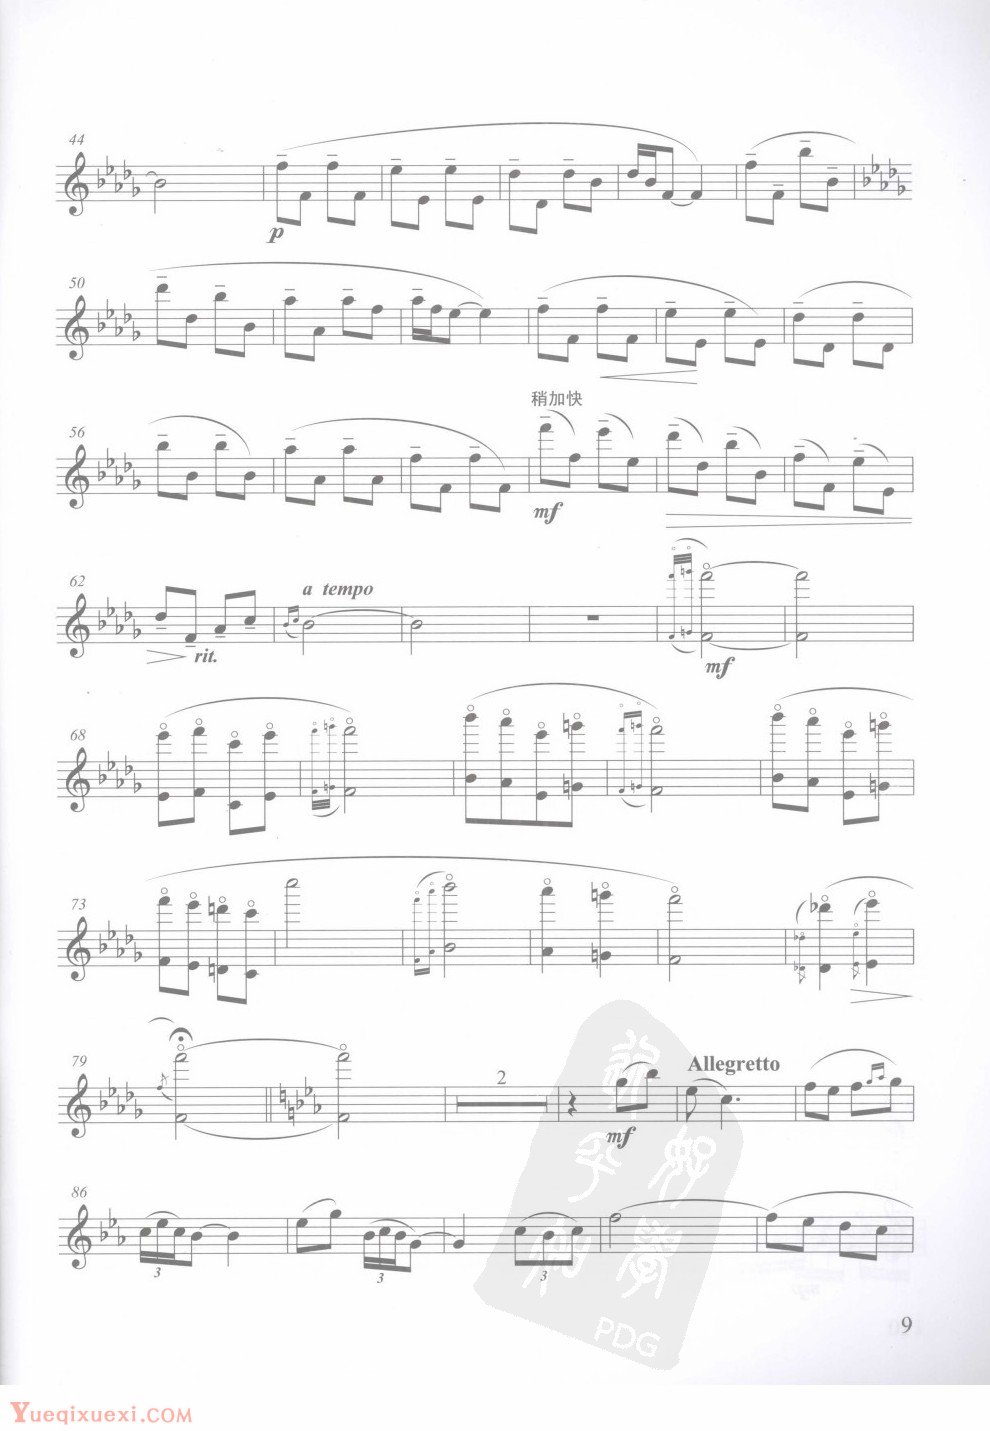 方定昊中国长笛作品集系列之：幻想曲，长笛独奏分谱